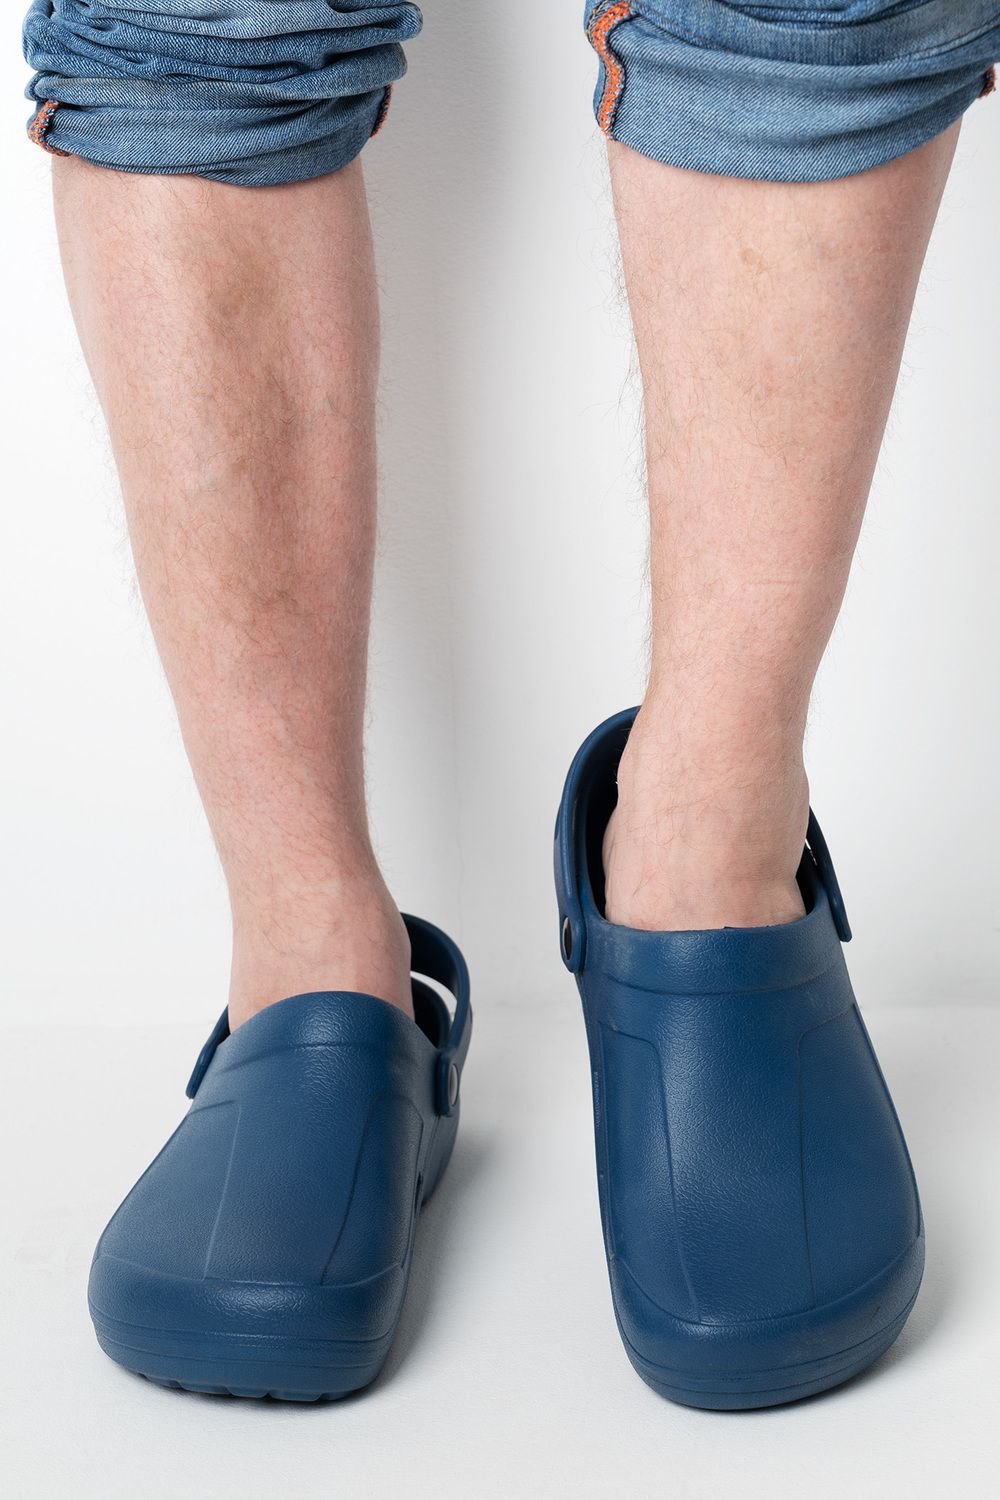 Обувь повседневная мужская сабо MGR - синий